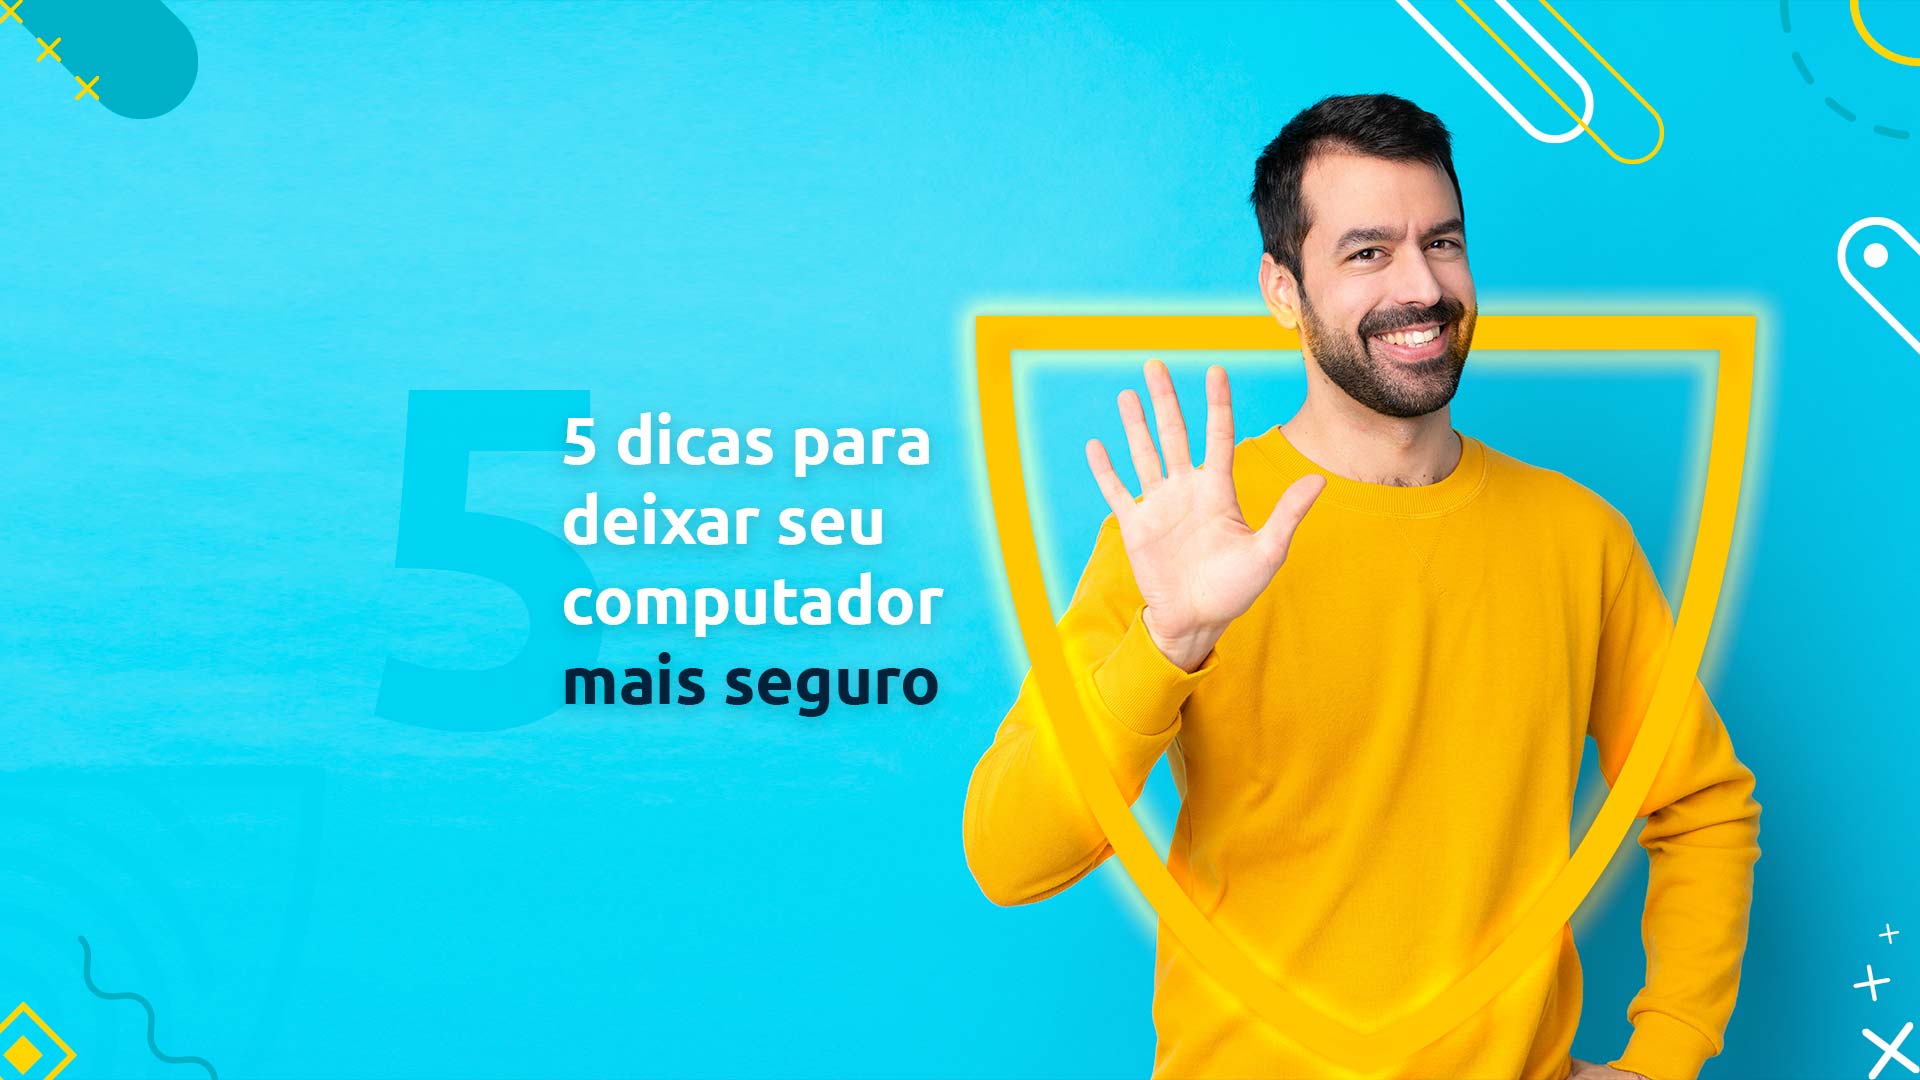 Homem sorrindo para a tela enquanto faz um sinal de cinco com sua mão. Ao seu lado, está a frase "5 dicas para deixar seu computador mais seguro"